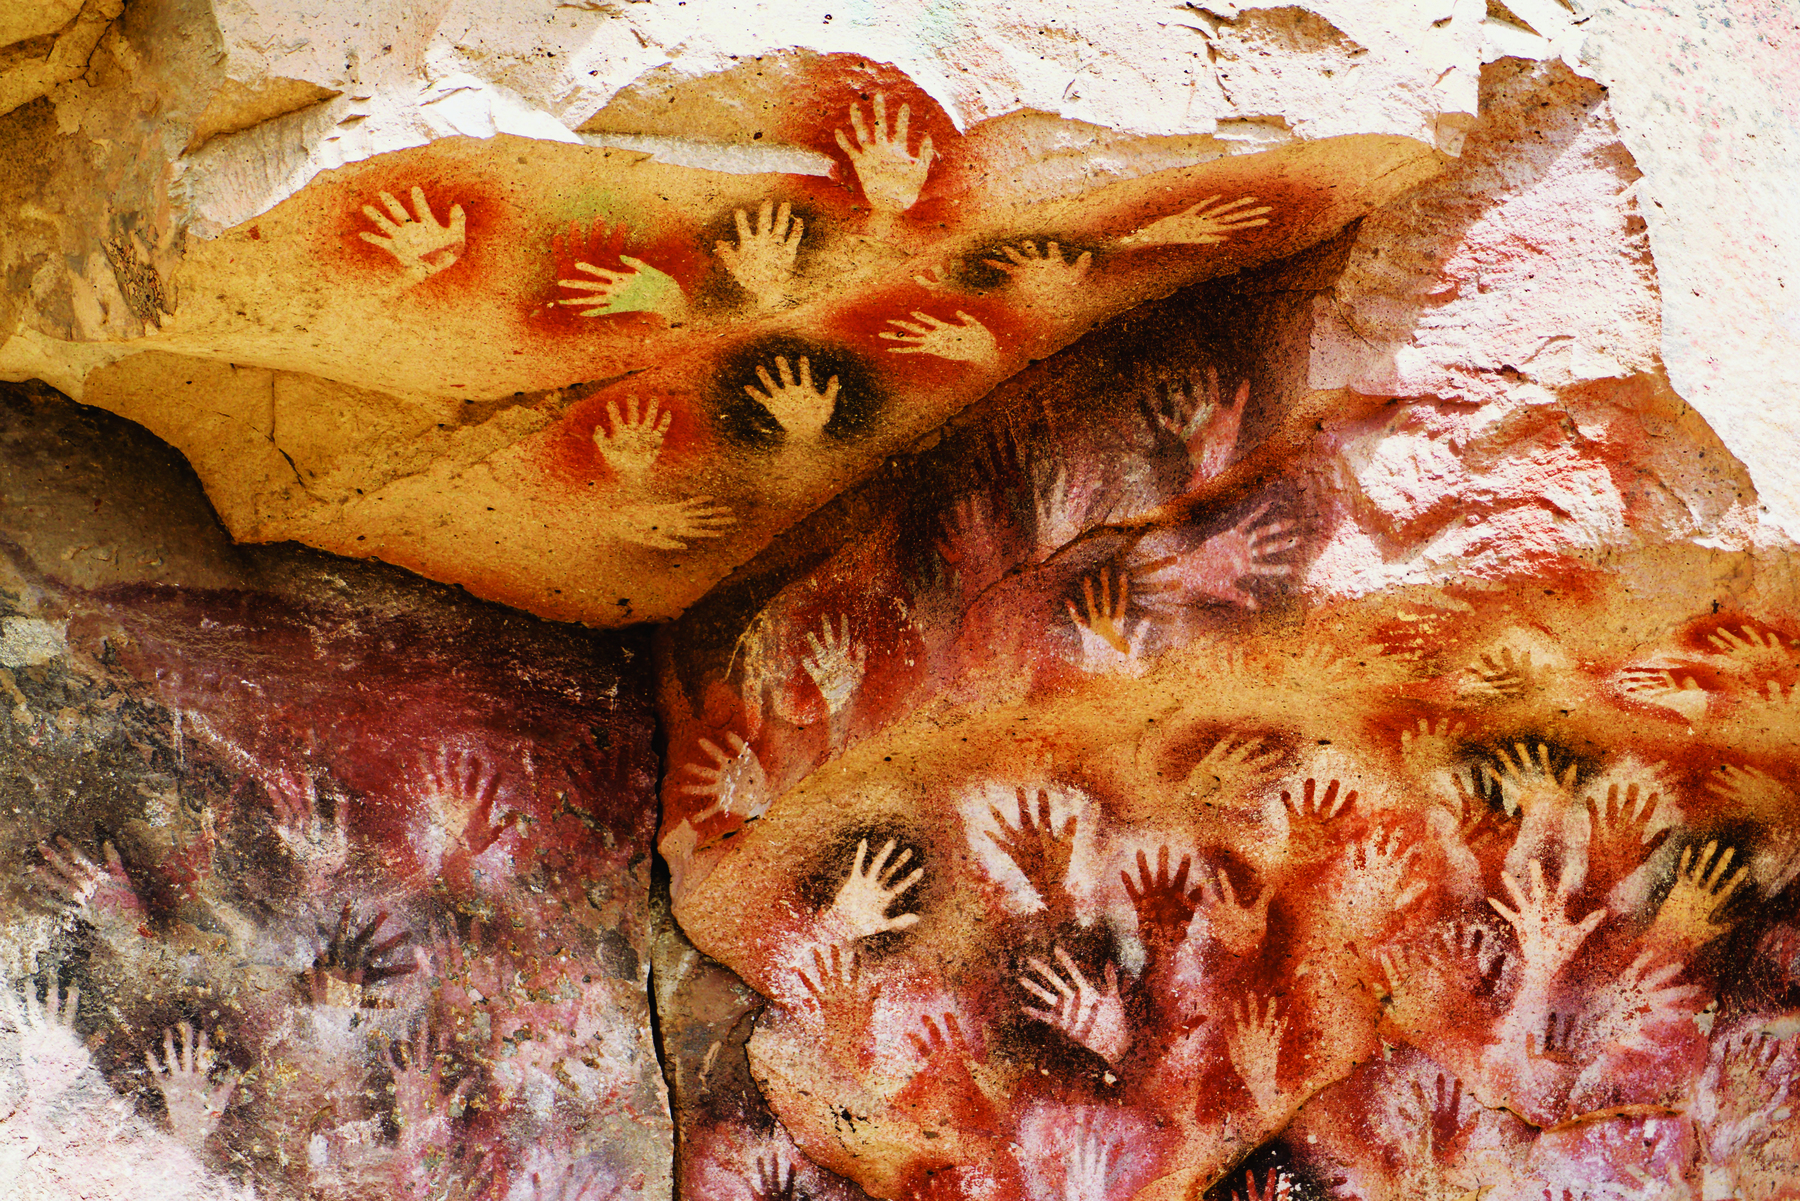 Fotografia. Pinturas rupestres feitas com marcas de mãos na rocha.